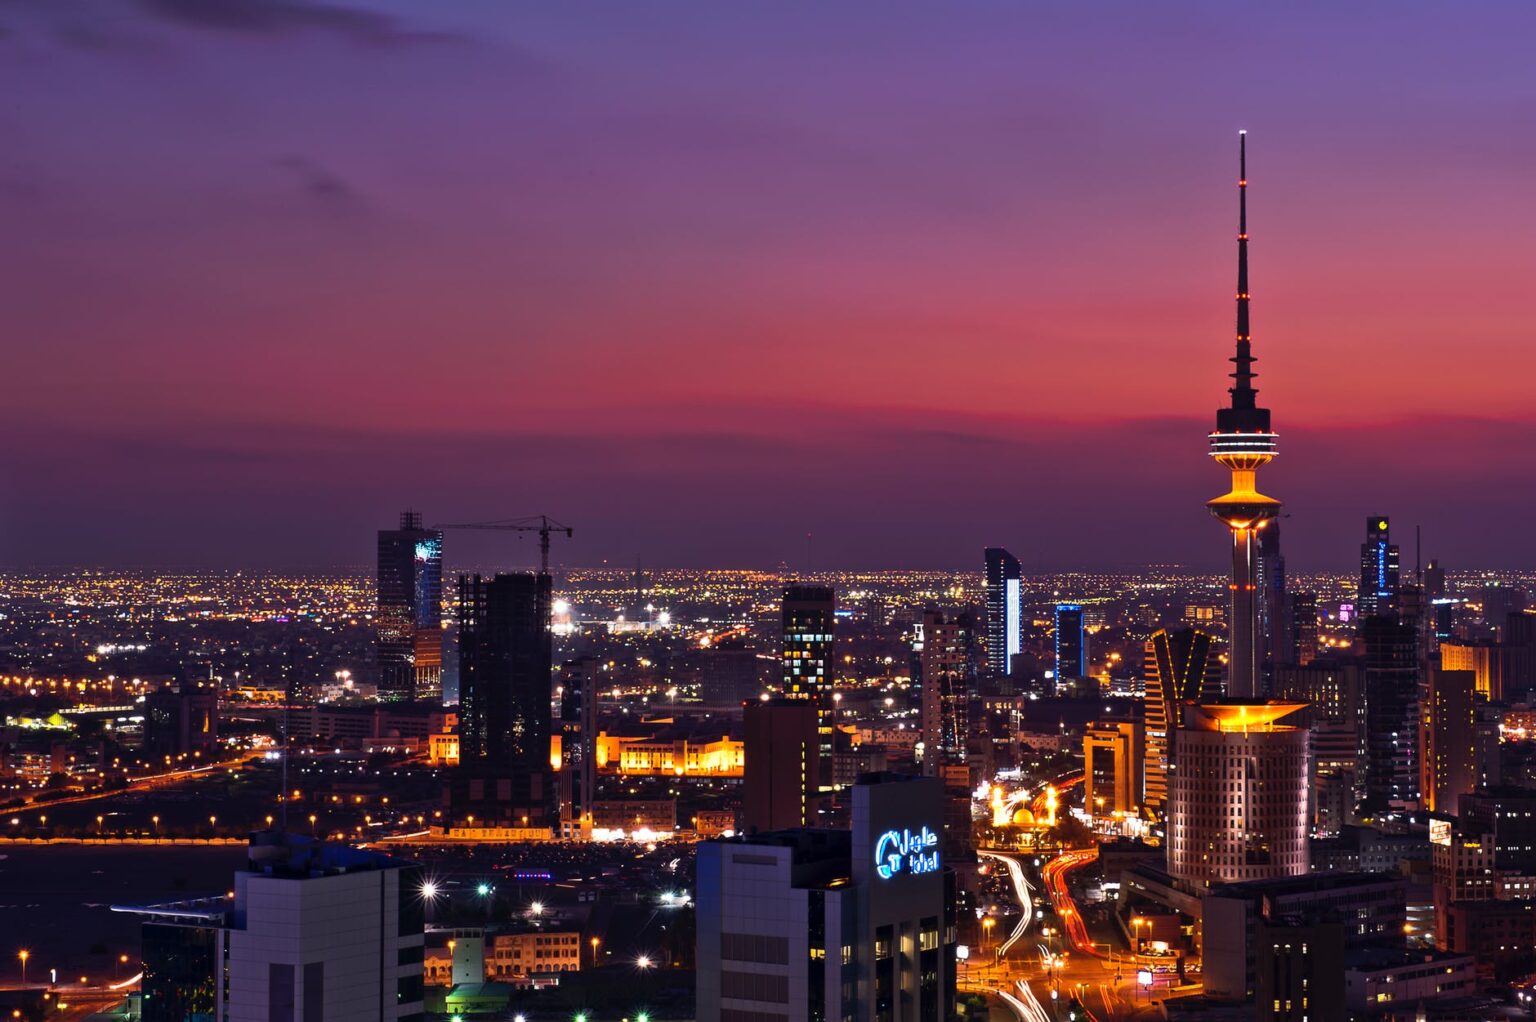 latest business ideas in kuwait